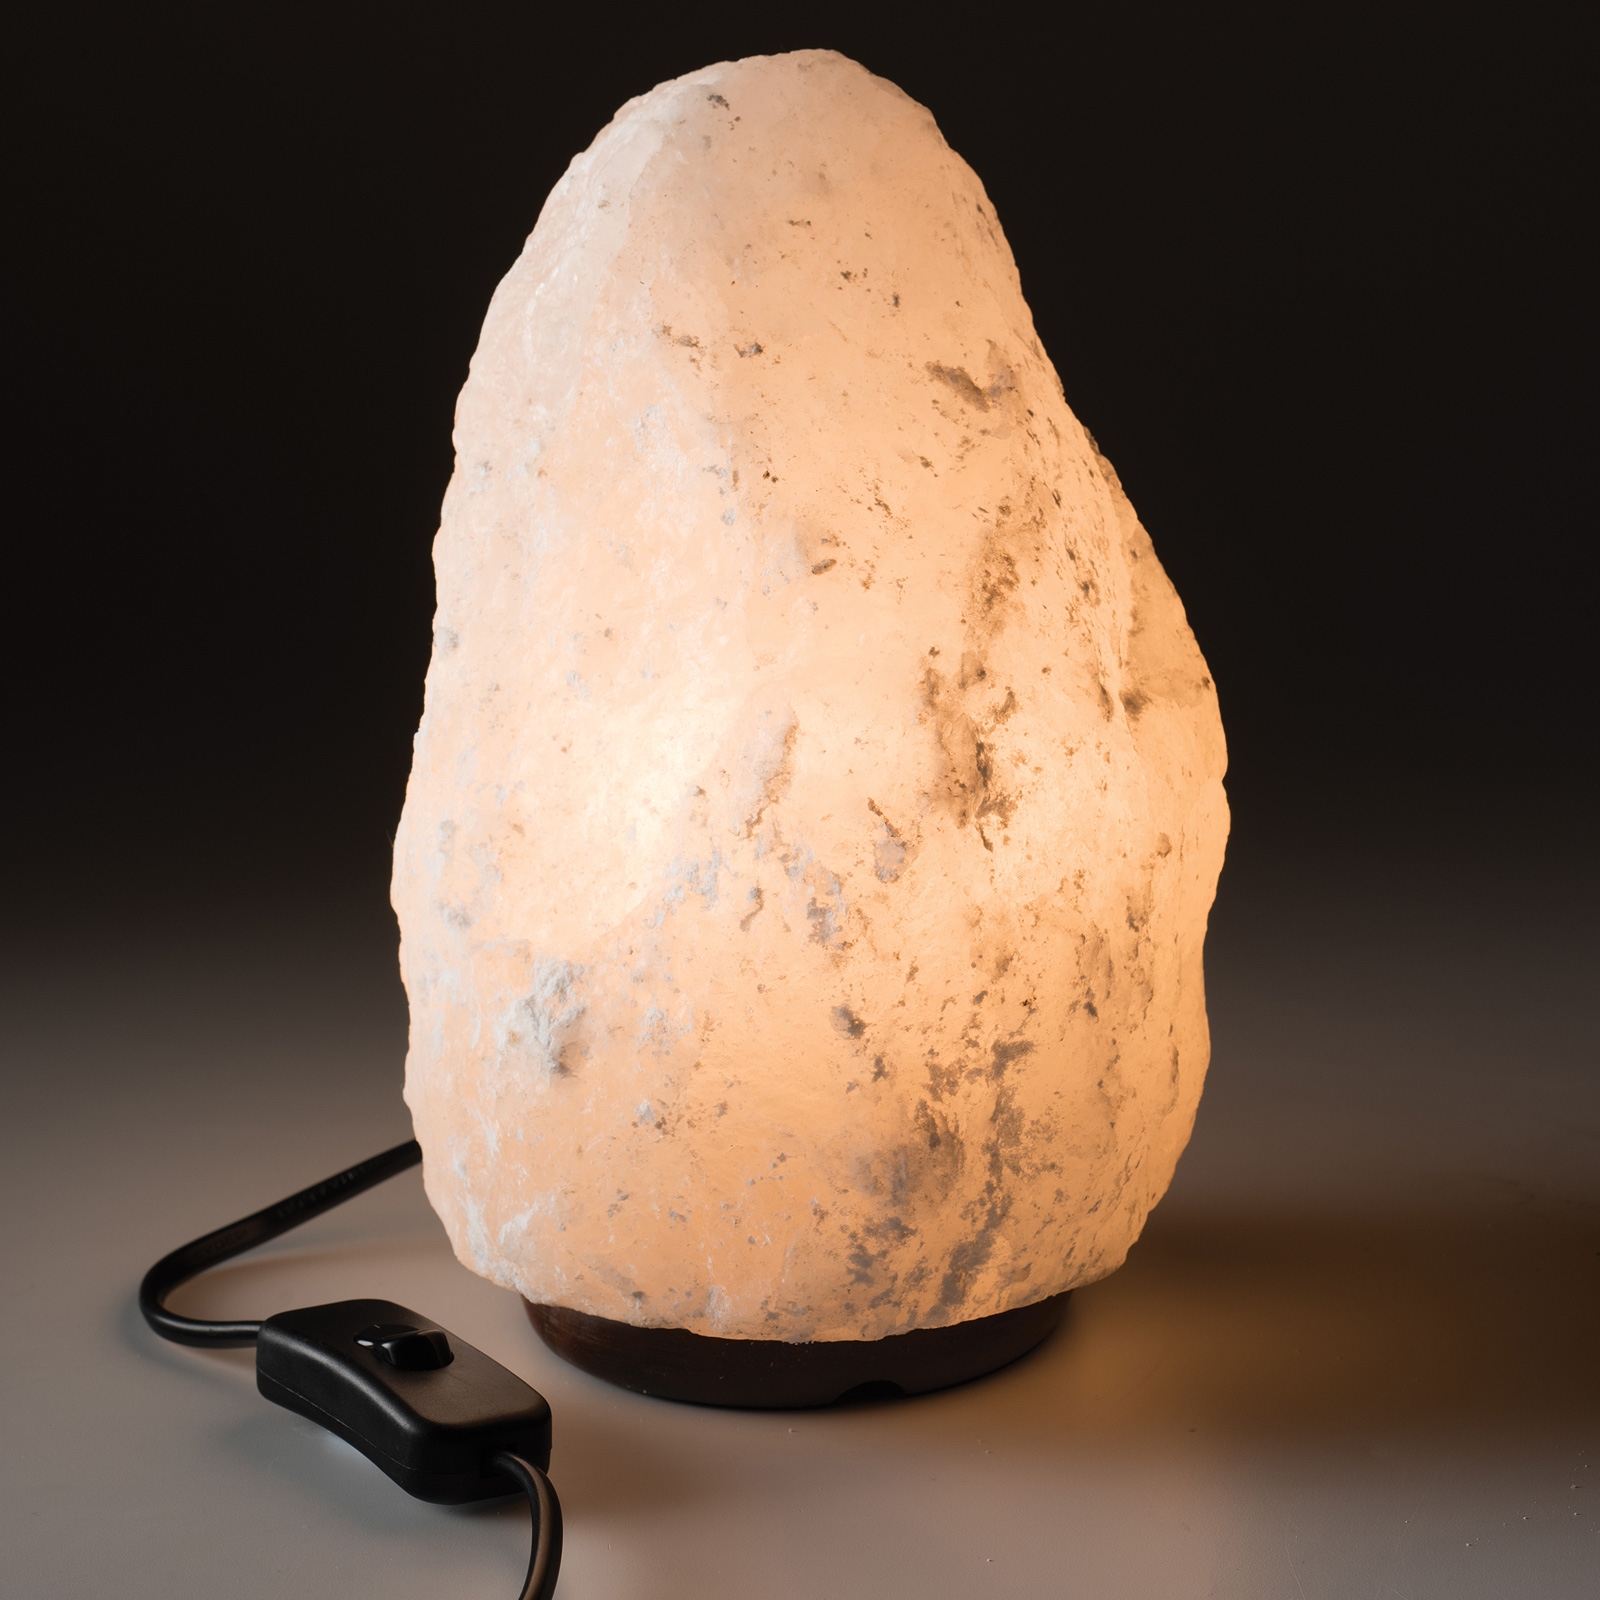 2 3kg White Himalayan Salt Lamp